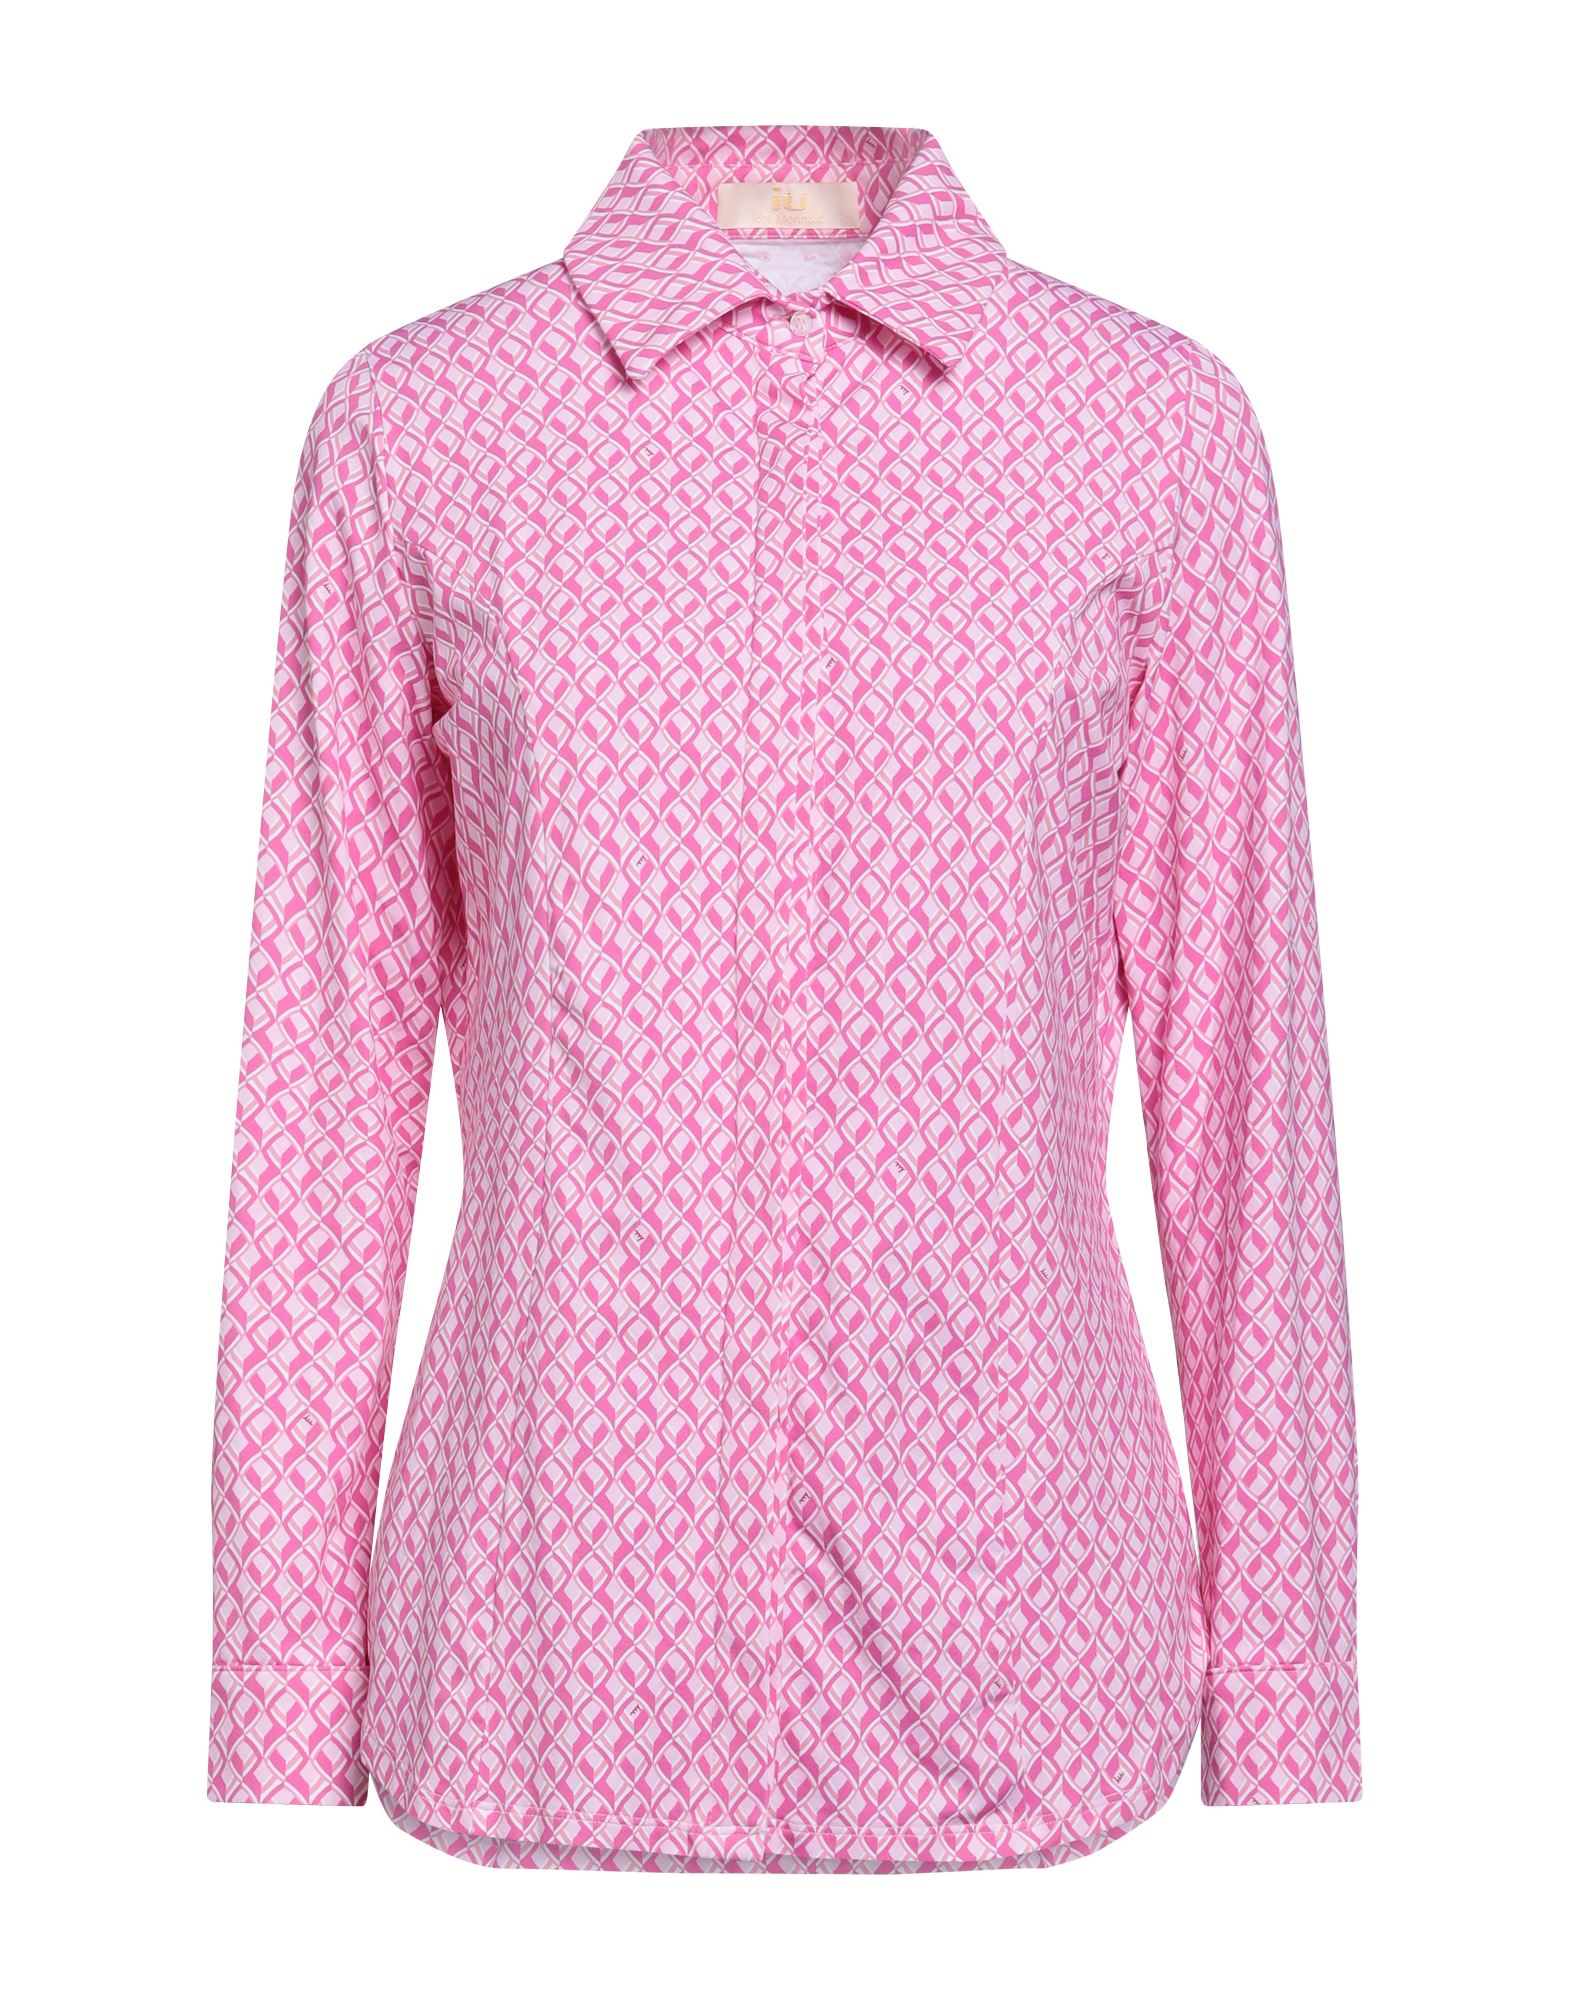 Iu Rita Mennoia Shirts In Pink